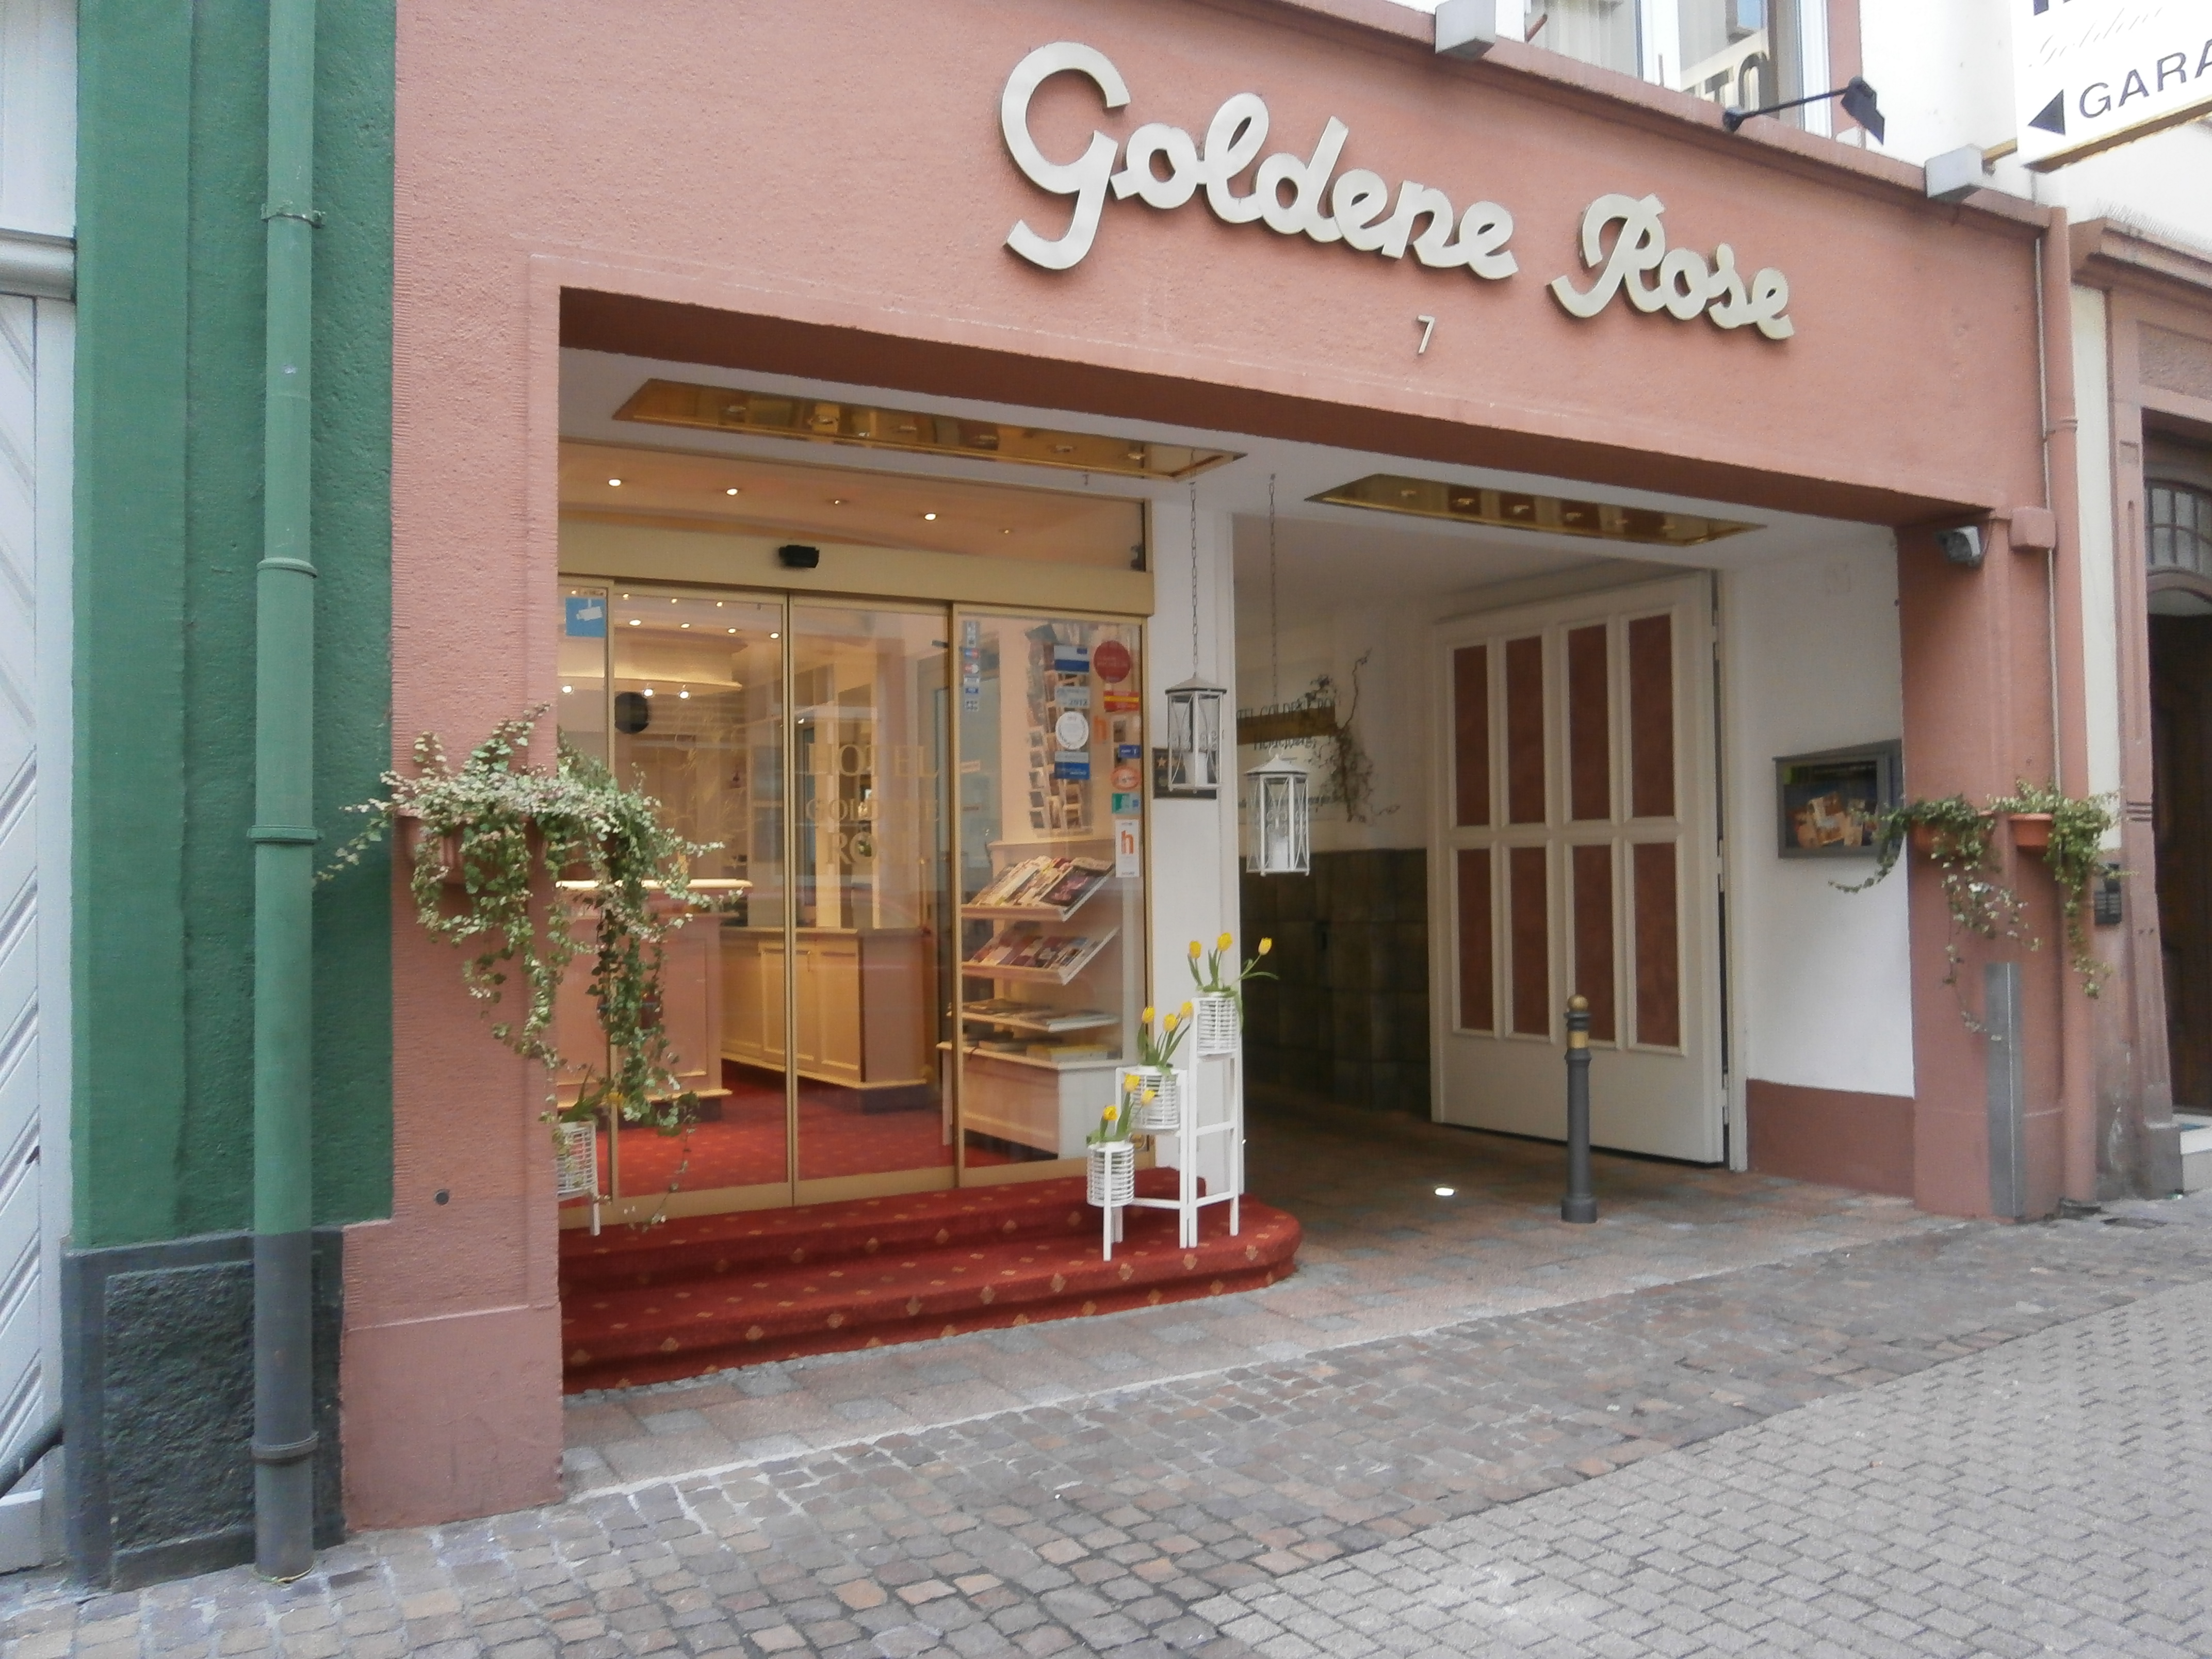 ➤ Goldene Rose 69117 Heidelberg-Altstadt Adresse | Telefon | Kontakt